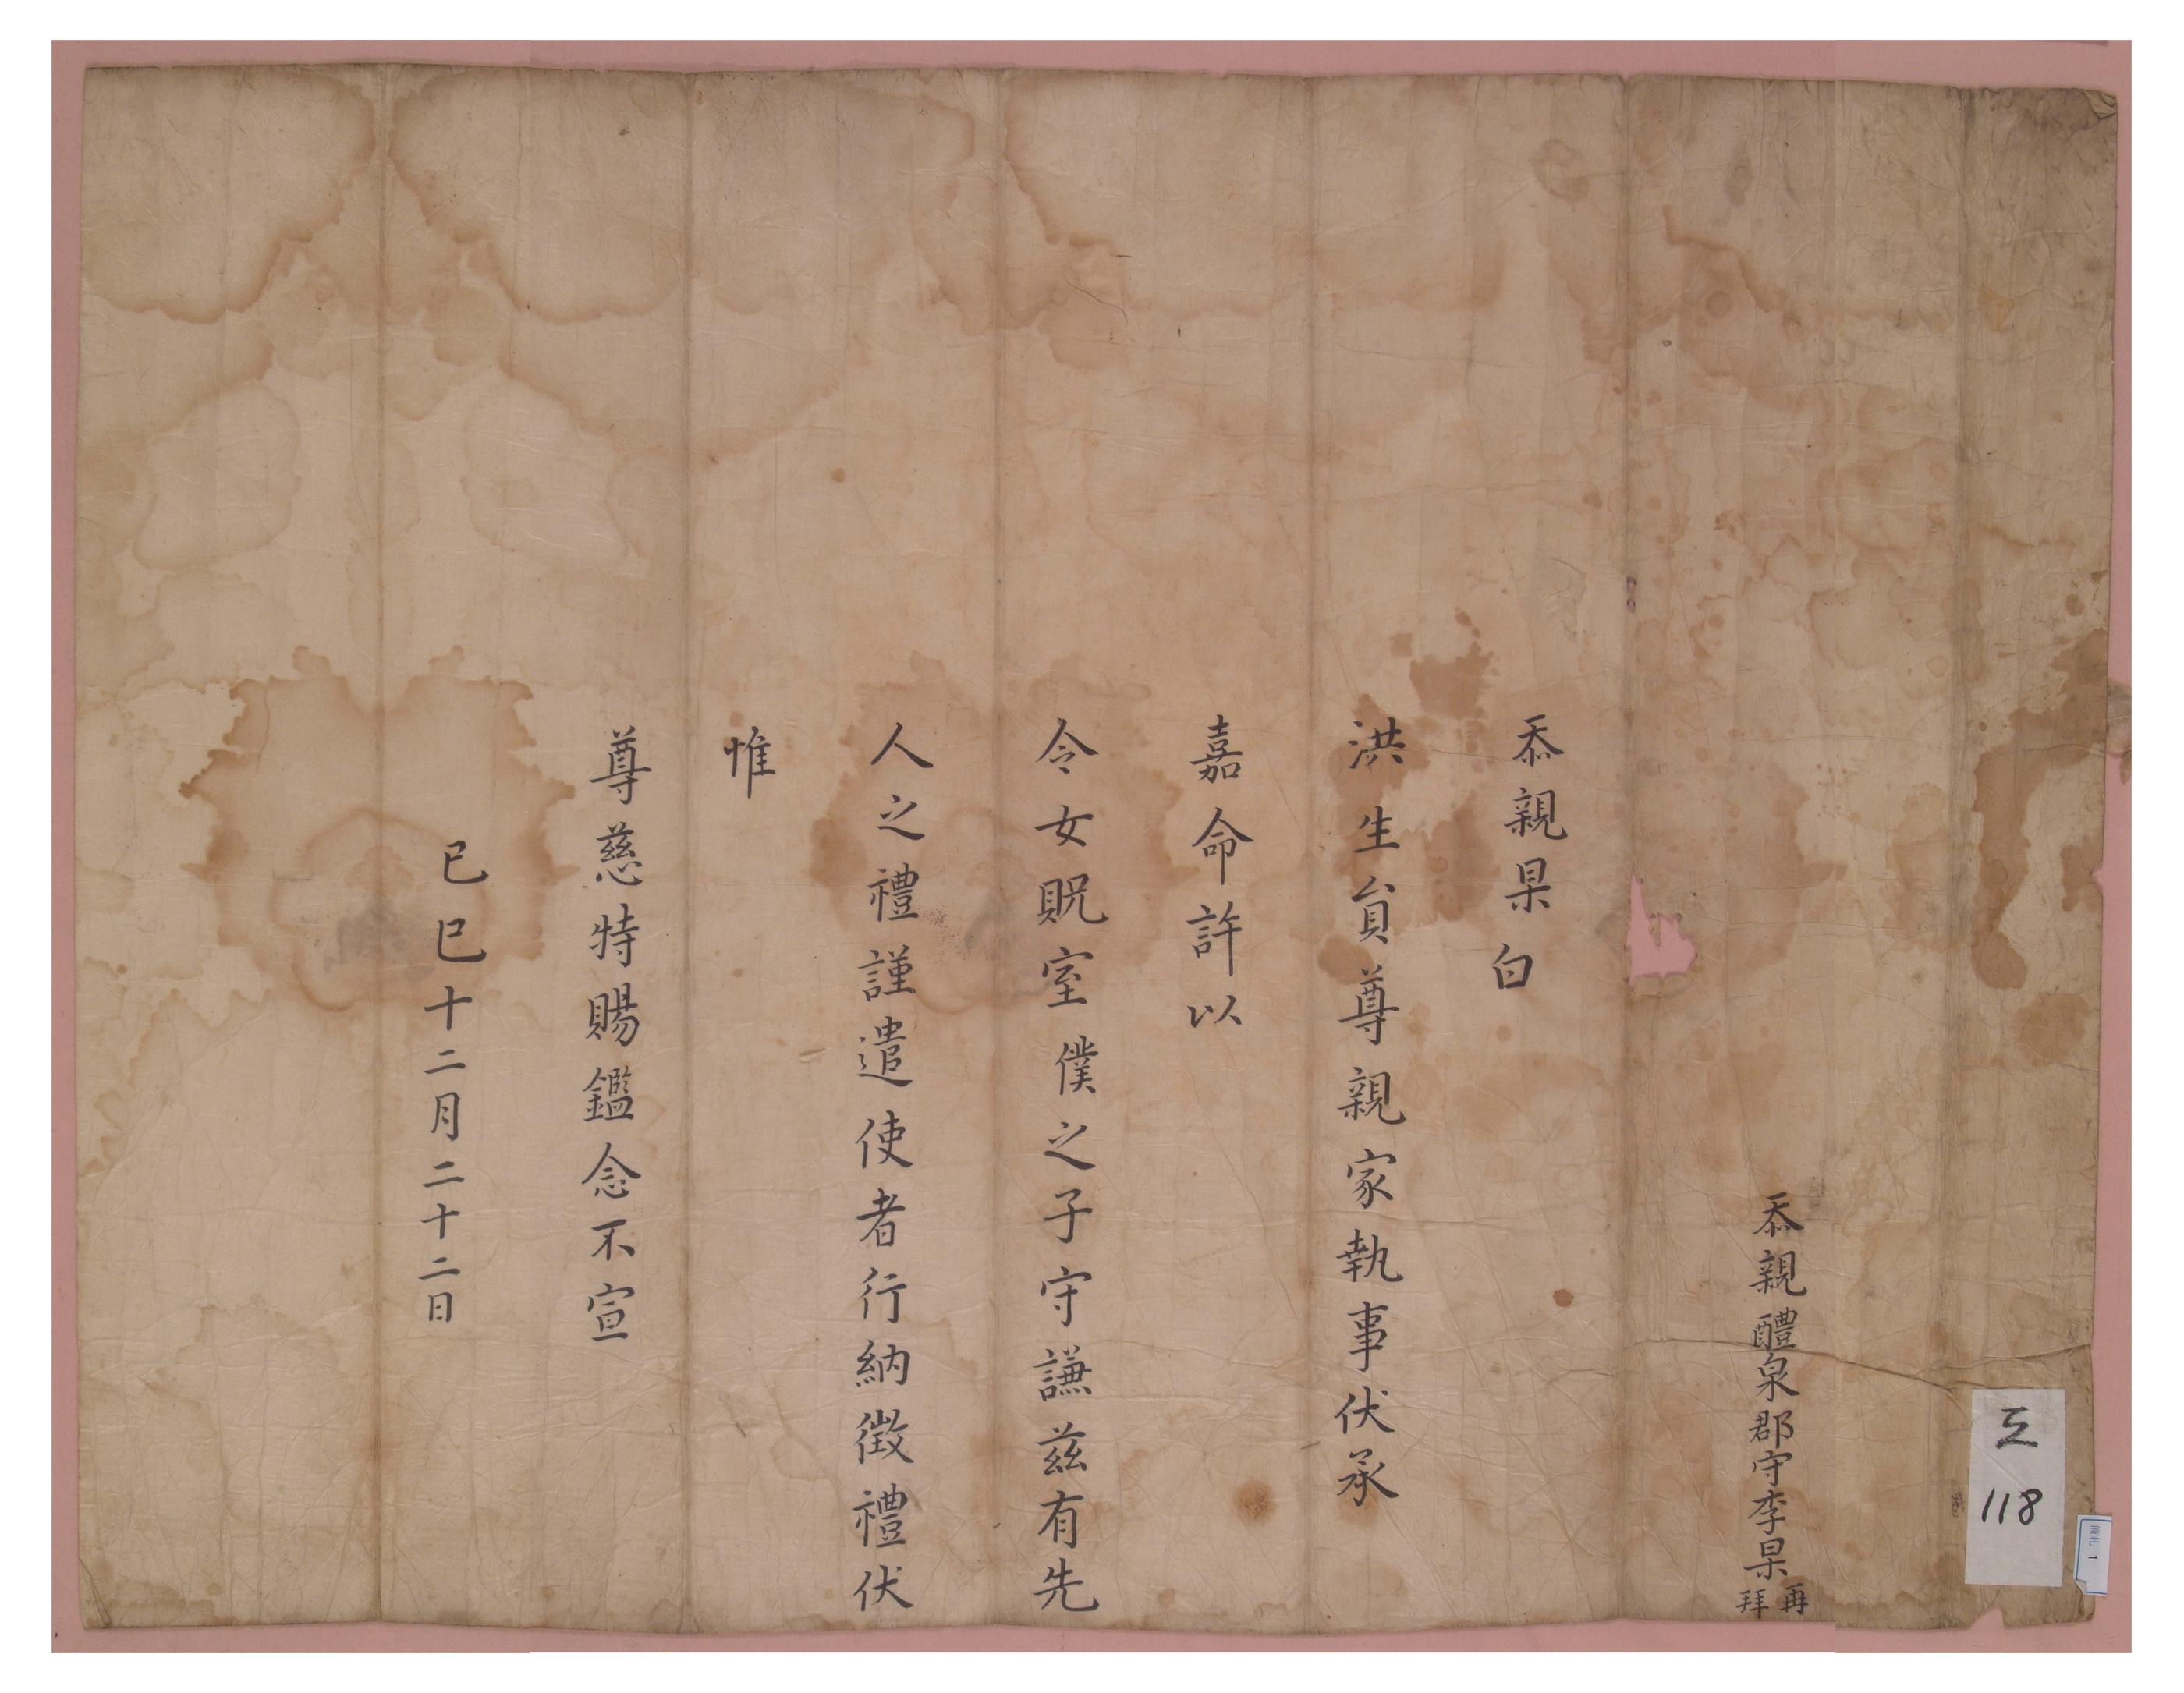 1689년 예천 군수인 이고가 아들인 이수겸을 홍 생원의 딸과 혼인시키기 위해 폐백을 보내며 쓴 간찰